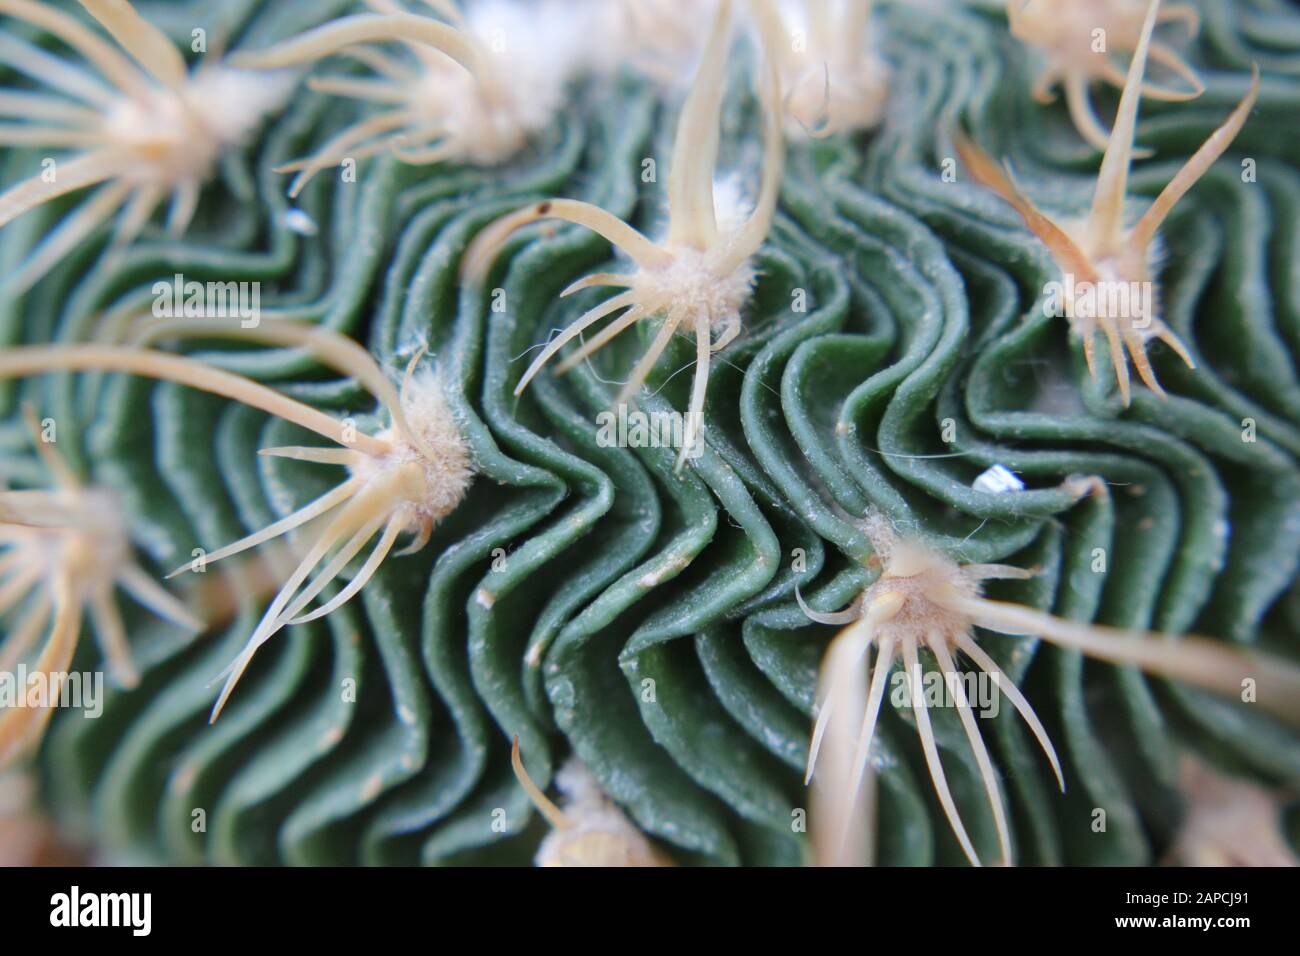 Wave Cactus, Brain Cactus, Zacatecasensis, Stenocactus multicostatus, Stock Photo